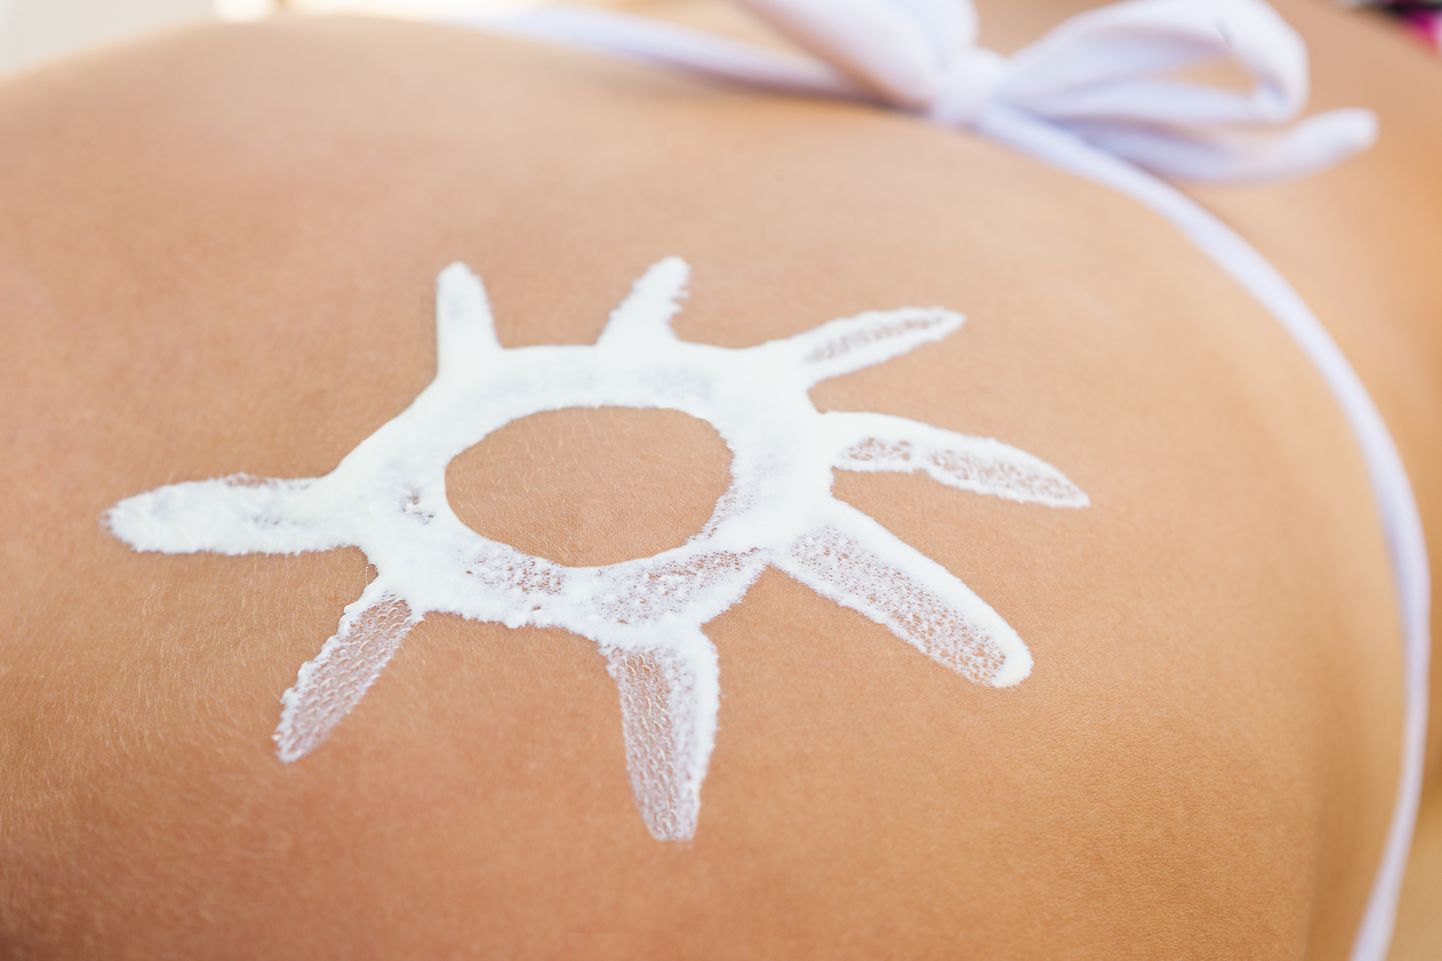 Päikesekreemides sisalduvate kemikaalide ohutust kontrollitakse pidevalt.